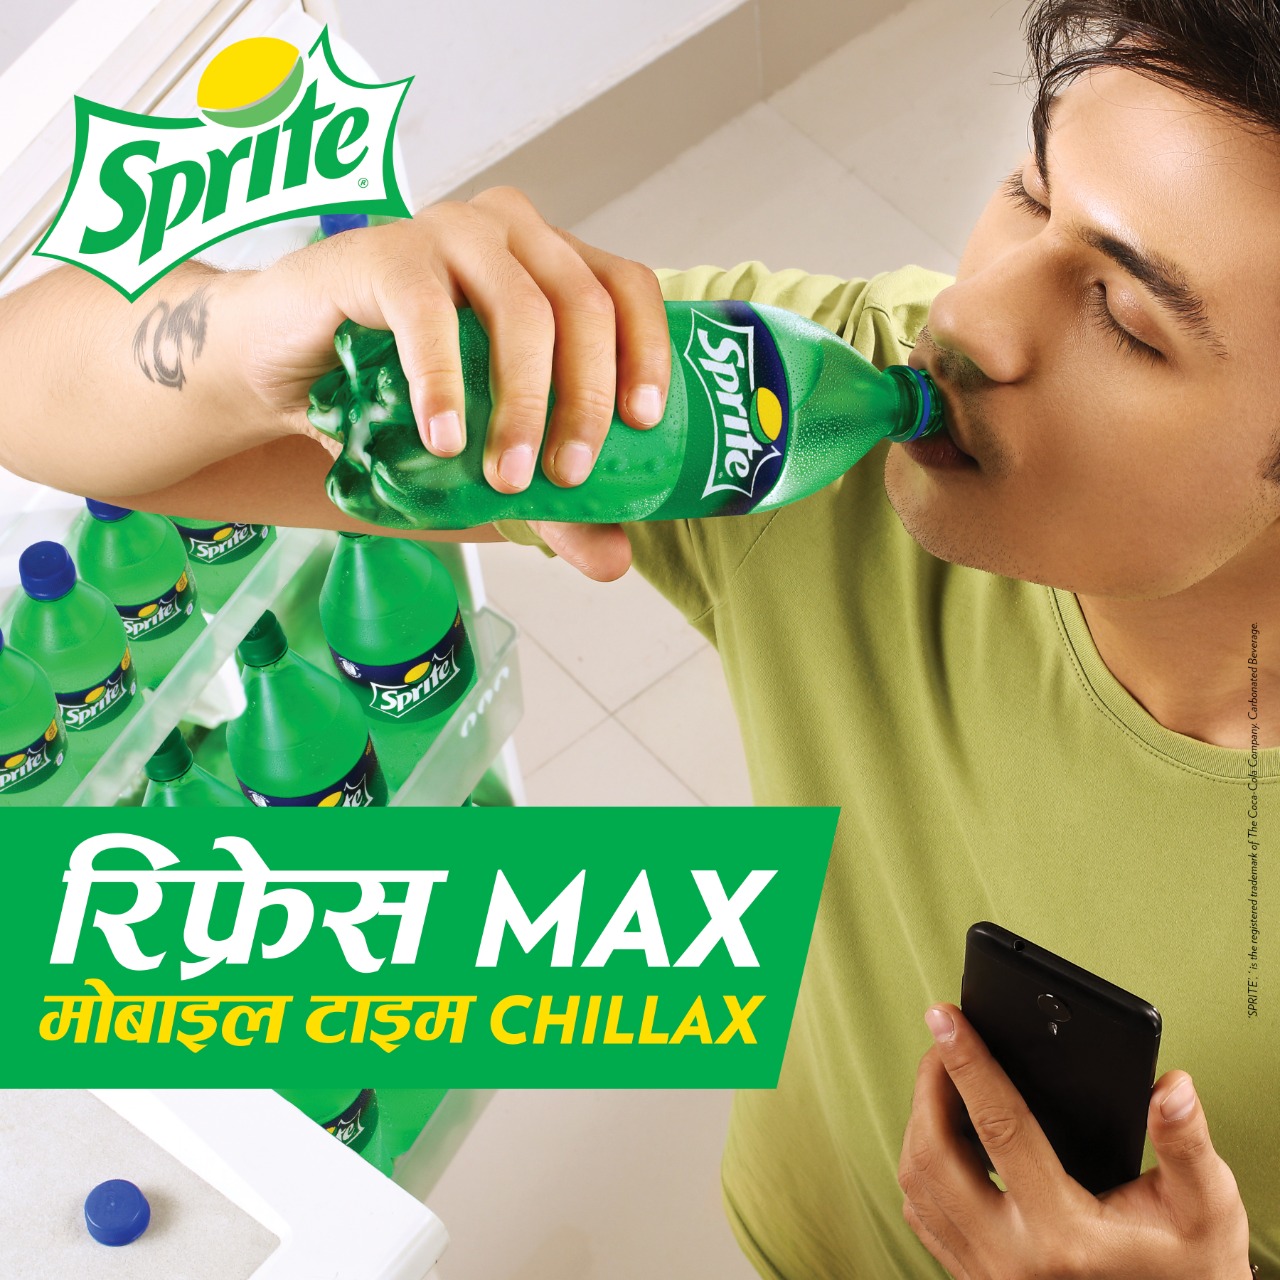 Sprite’s campaign ‘Refresh Max, Mobile Time Chilks’